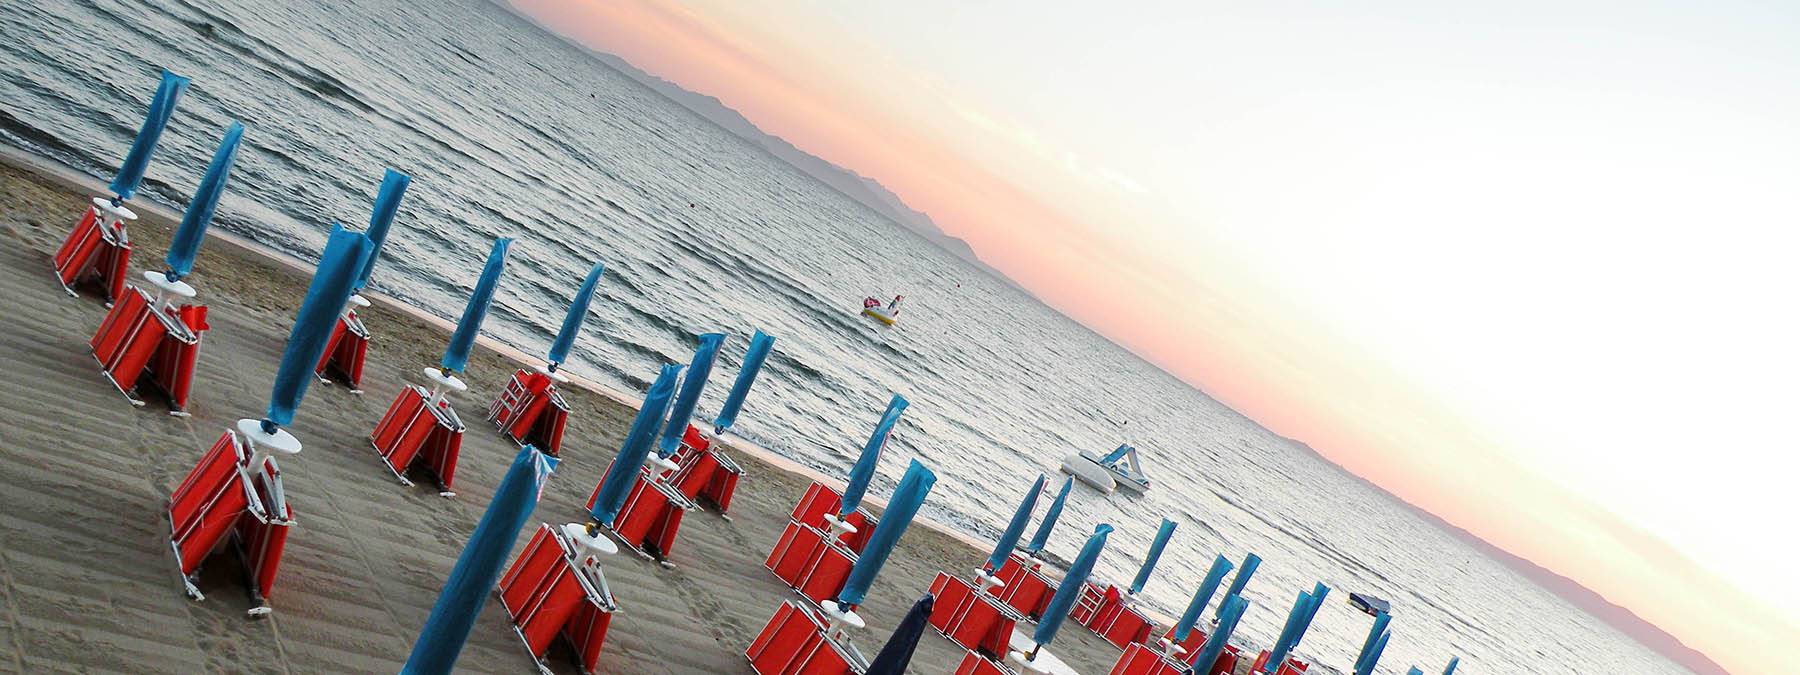 Familienurlaub in einem Hotel mit Restaurant und Strand in der Toskana